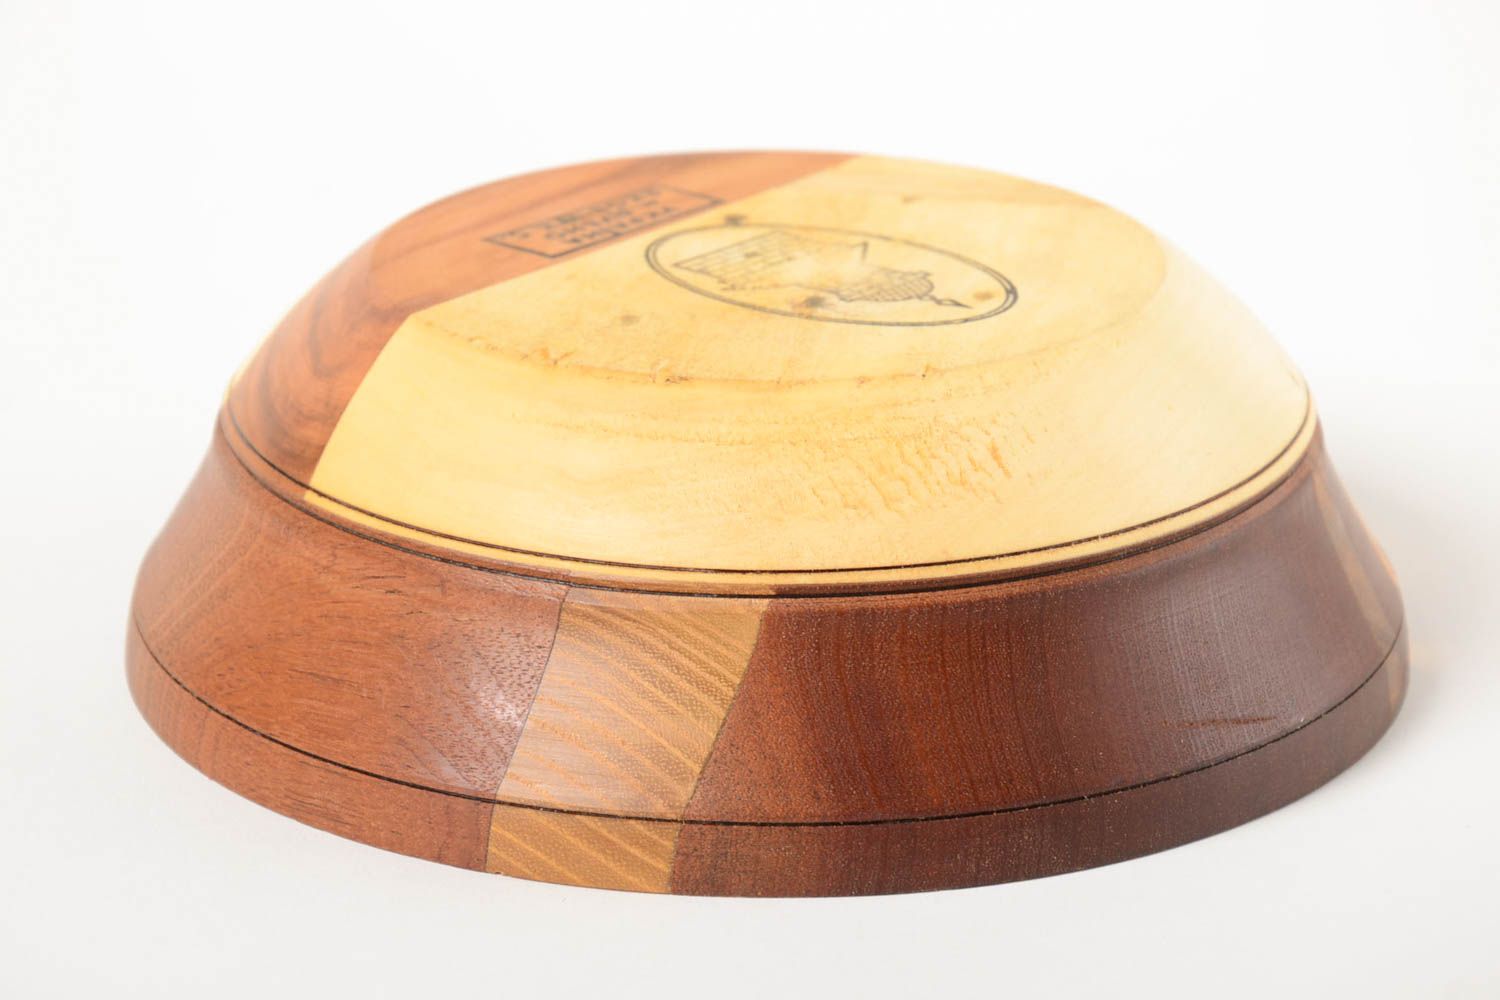 Beautiful handmade wooden bowl kitchen supplies kitchen design gift ideas photo 4